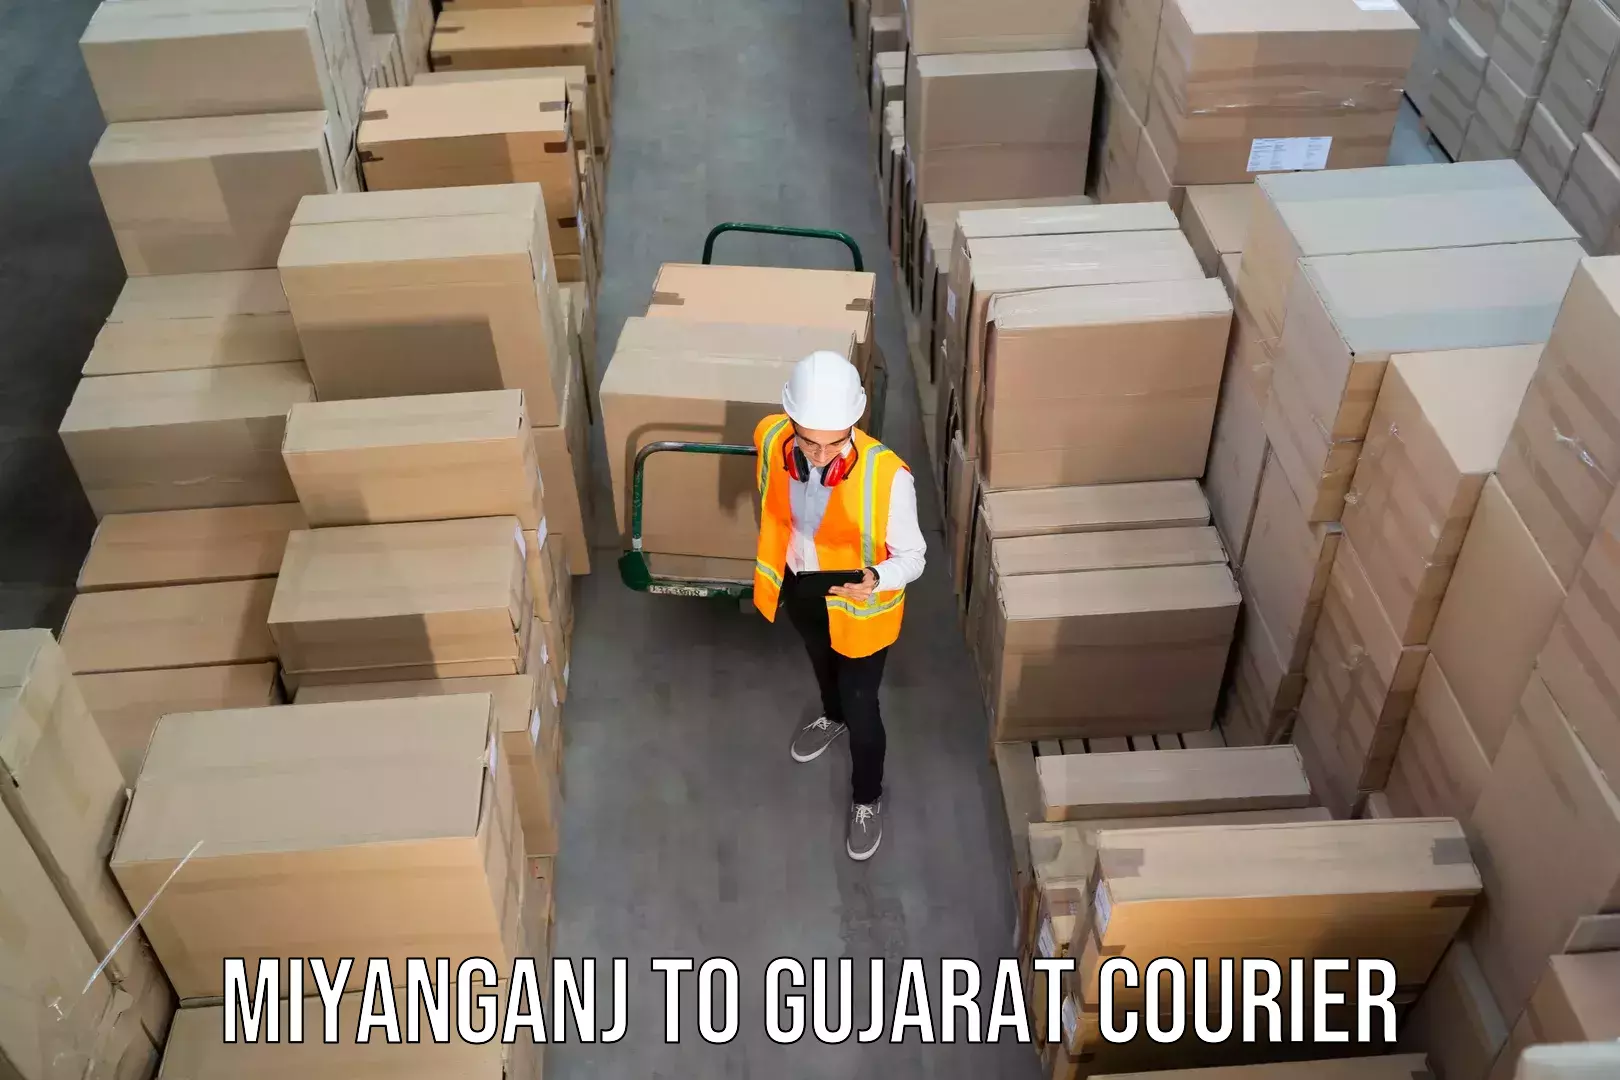 High-capacity shipping options Miyanganj to Ahmedabad